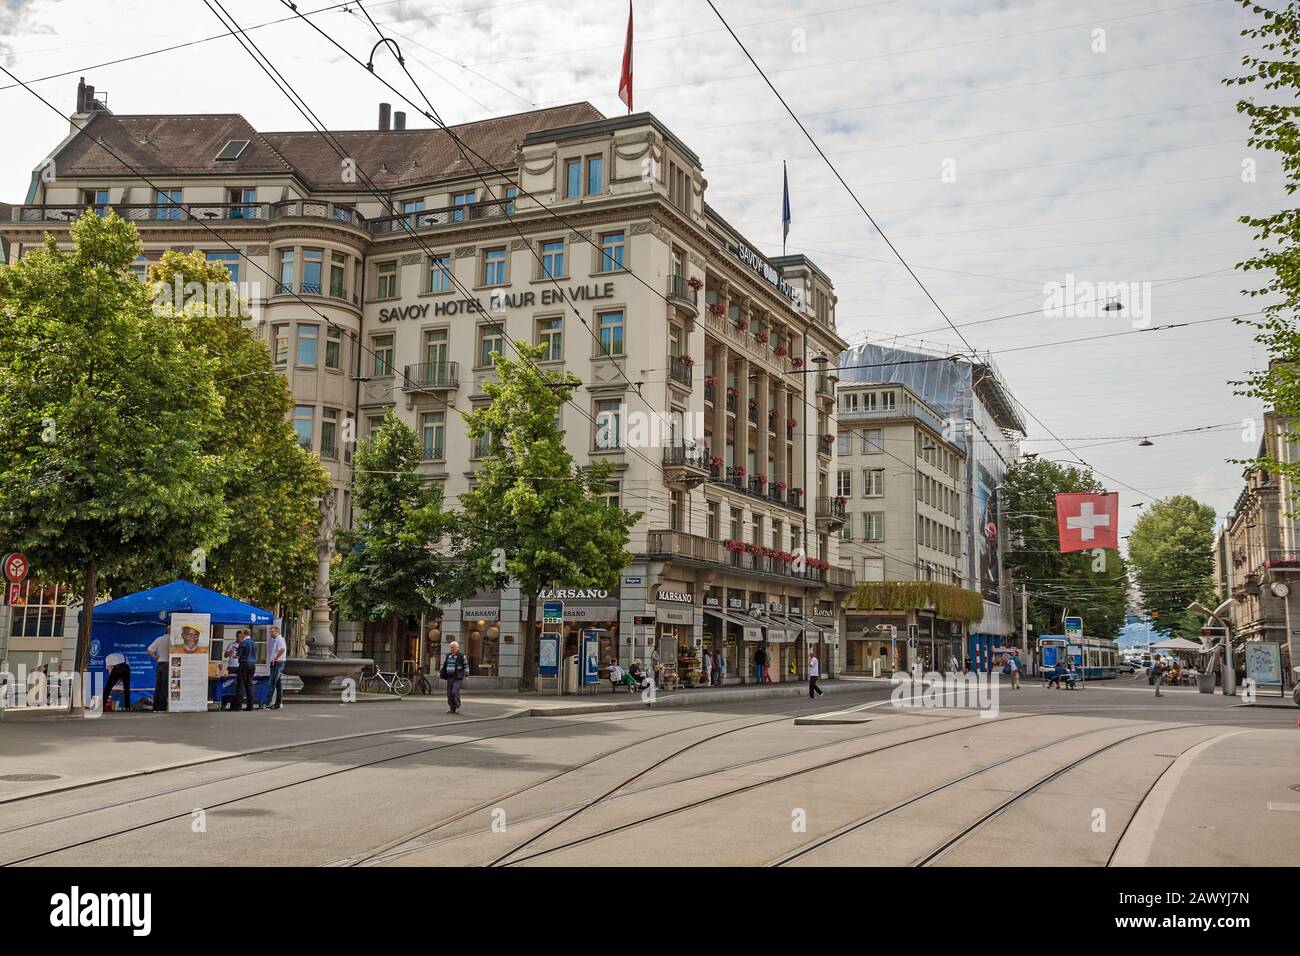 Zurigo, Svizzera - 10 giugno 2017: Centro di Zurigo, Paradeplatz con Savoy Hotel Baur en Ville, vista dal lungomare dello shopping chiamato Bahnhofstra Foto Stock